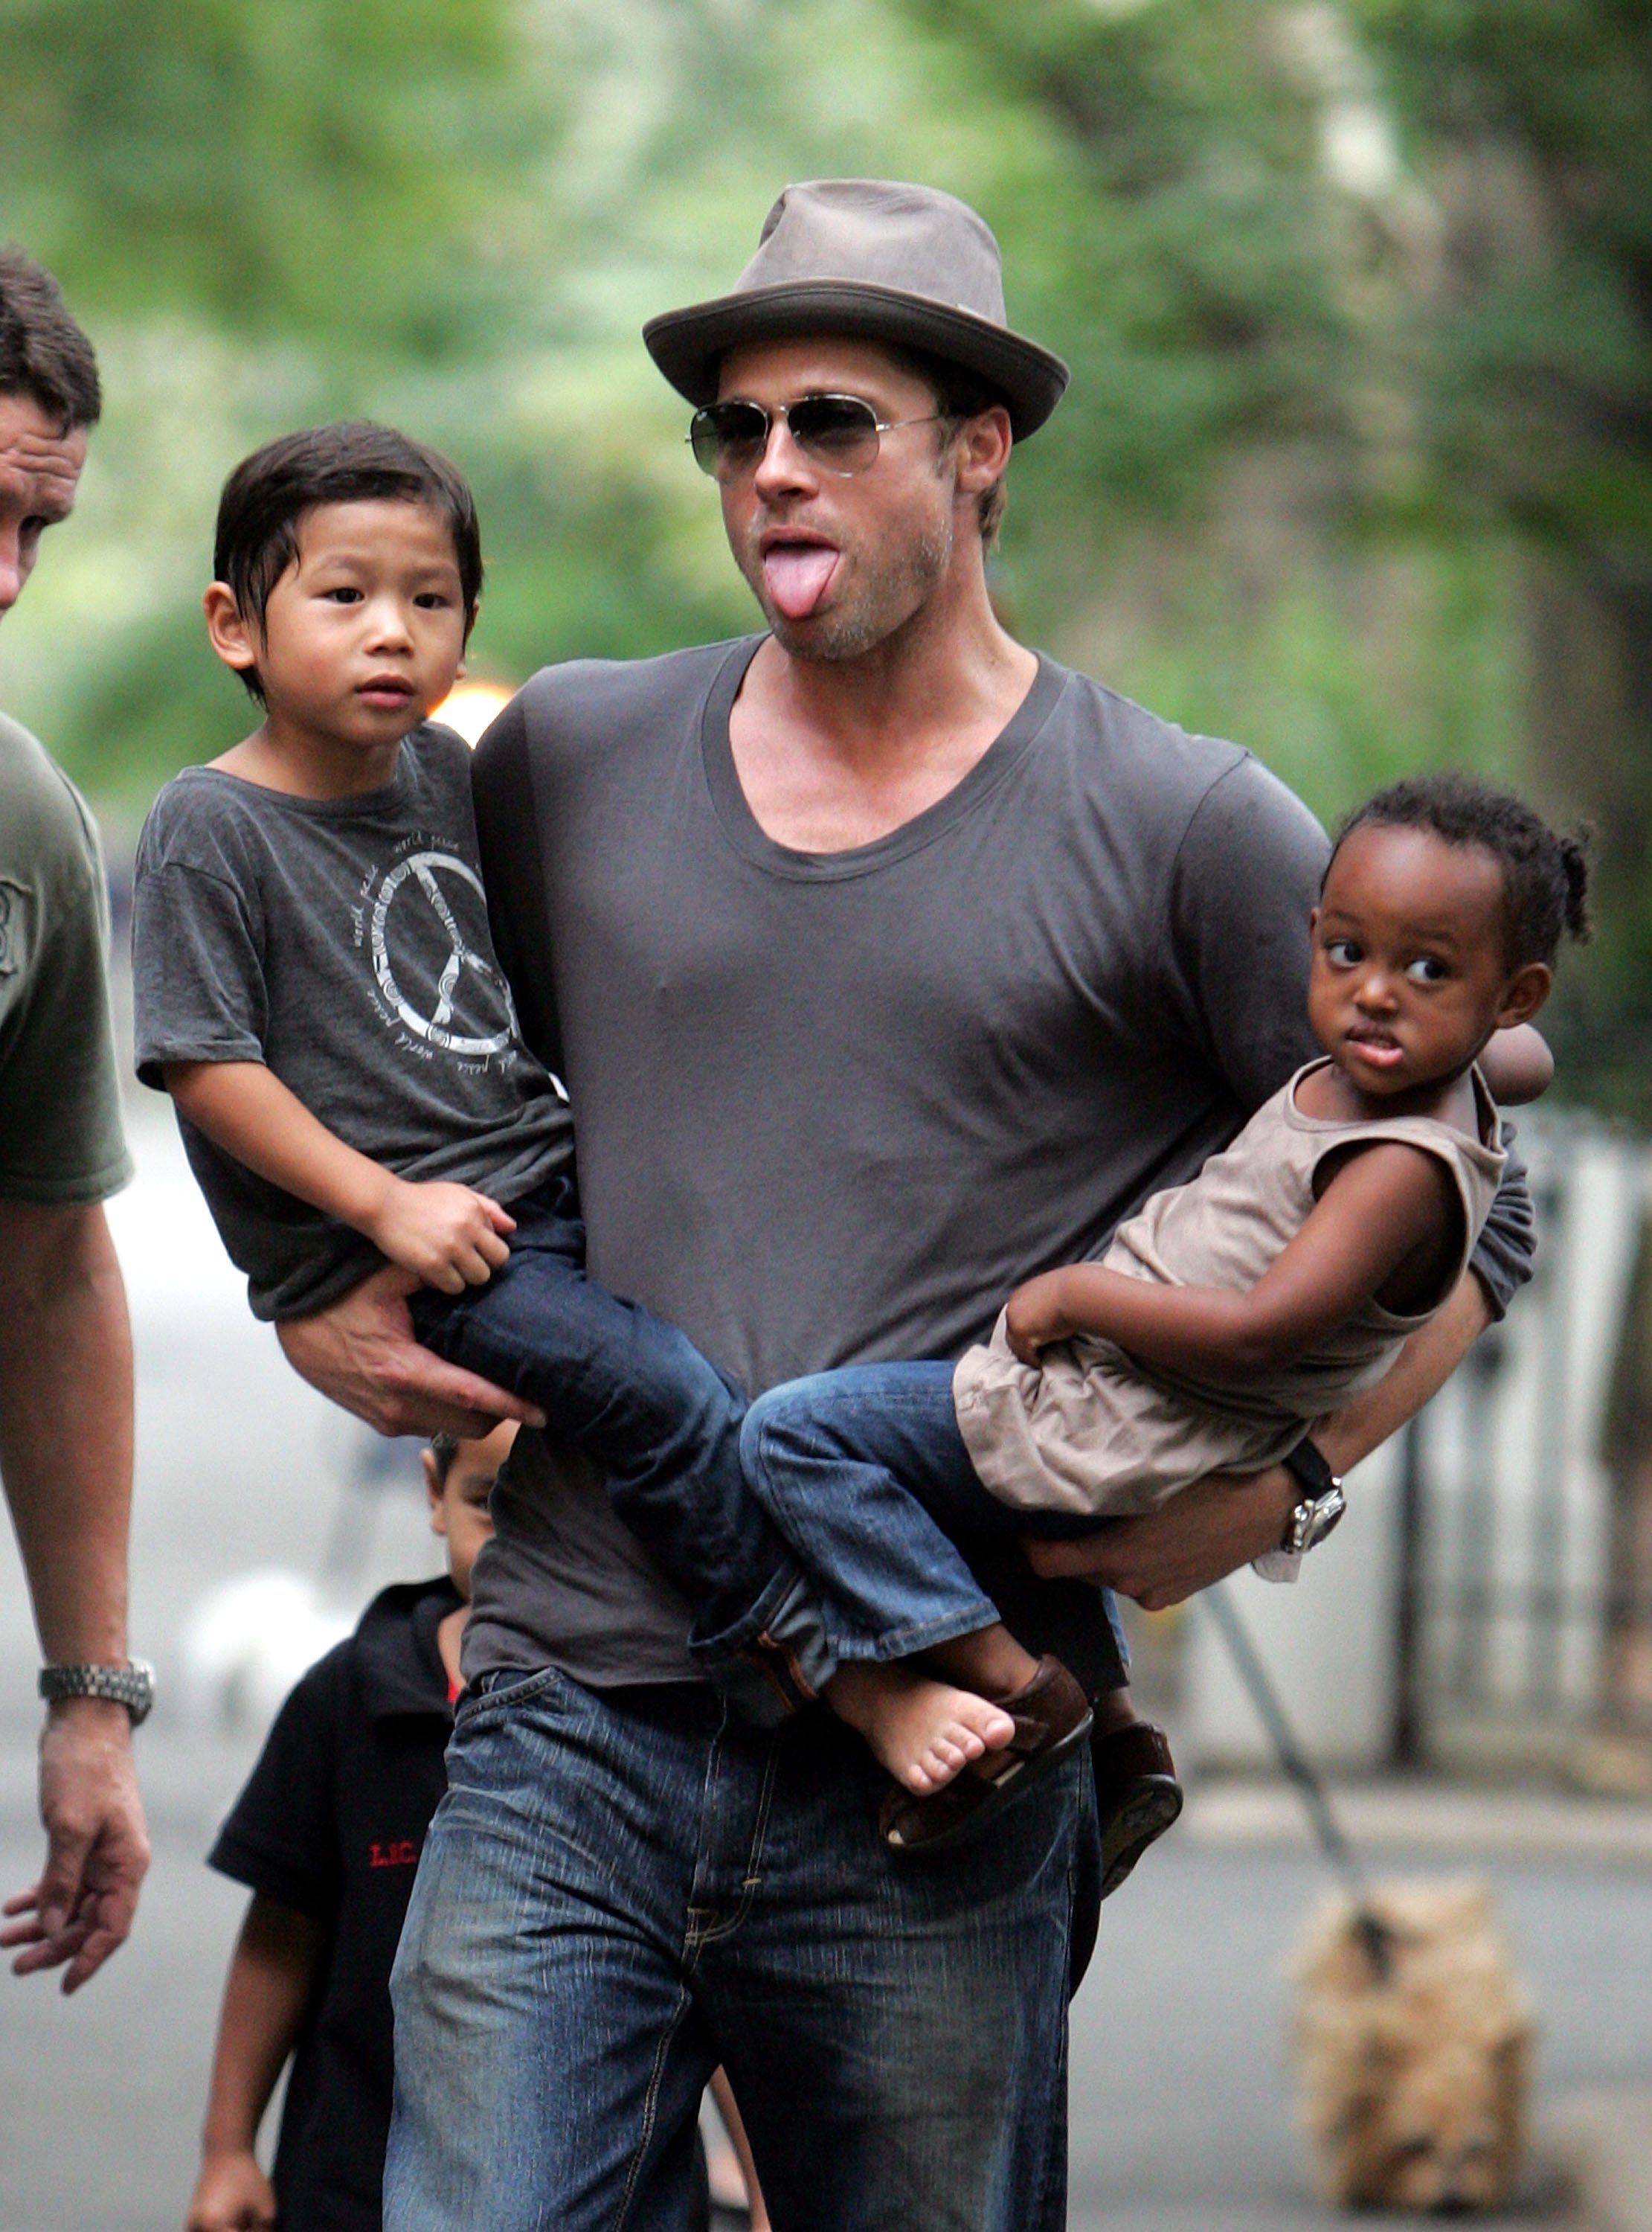 Brad Pitt besucht einen Spielplatz mit seinen Kindern Zahara, Pax und Maddox Jolie-Pitt am 26. August 2007 in New York City. | Quelle: Getty Images